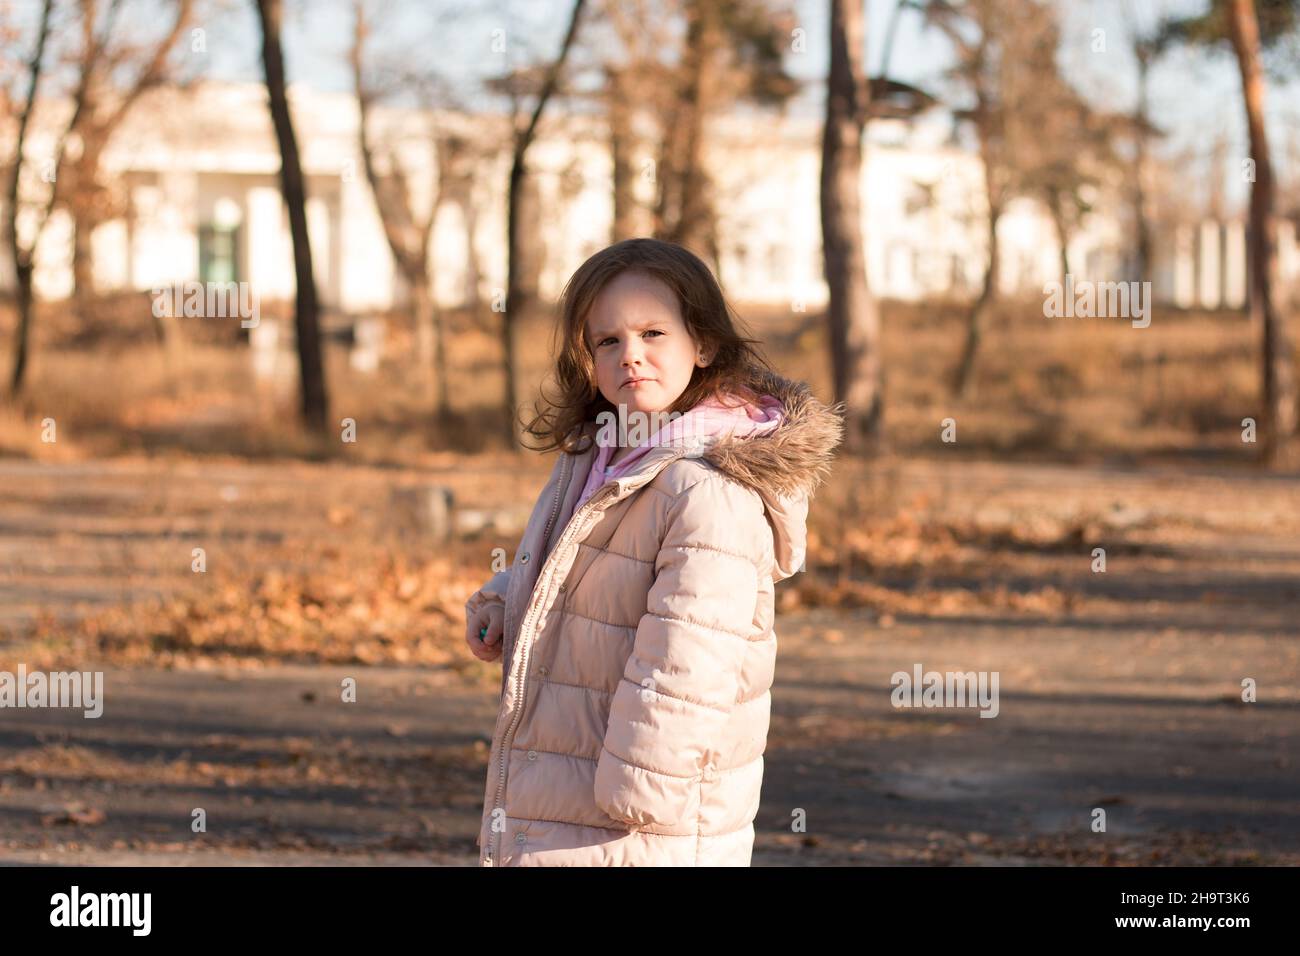 Una chica solitaria en una chaqueta una capucha esponjosa da la y mira a la cámara. Niño con ropa de abrigo en una calle fría de otoño Fotografía de